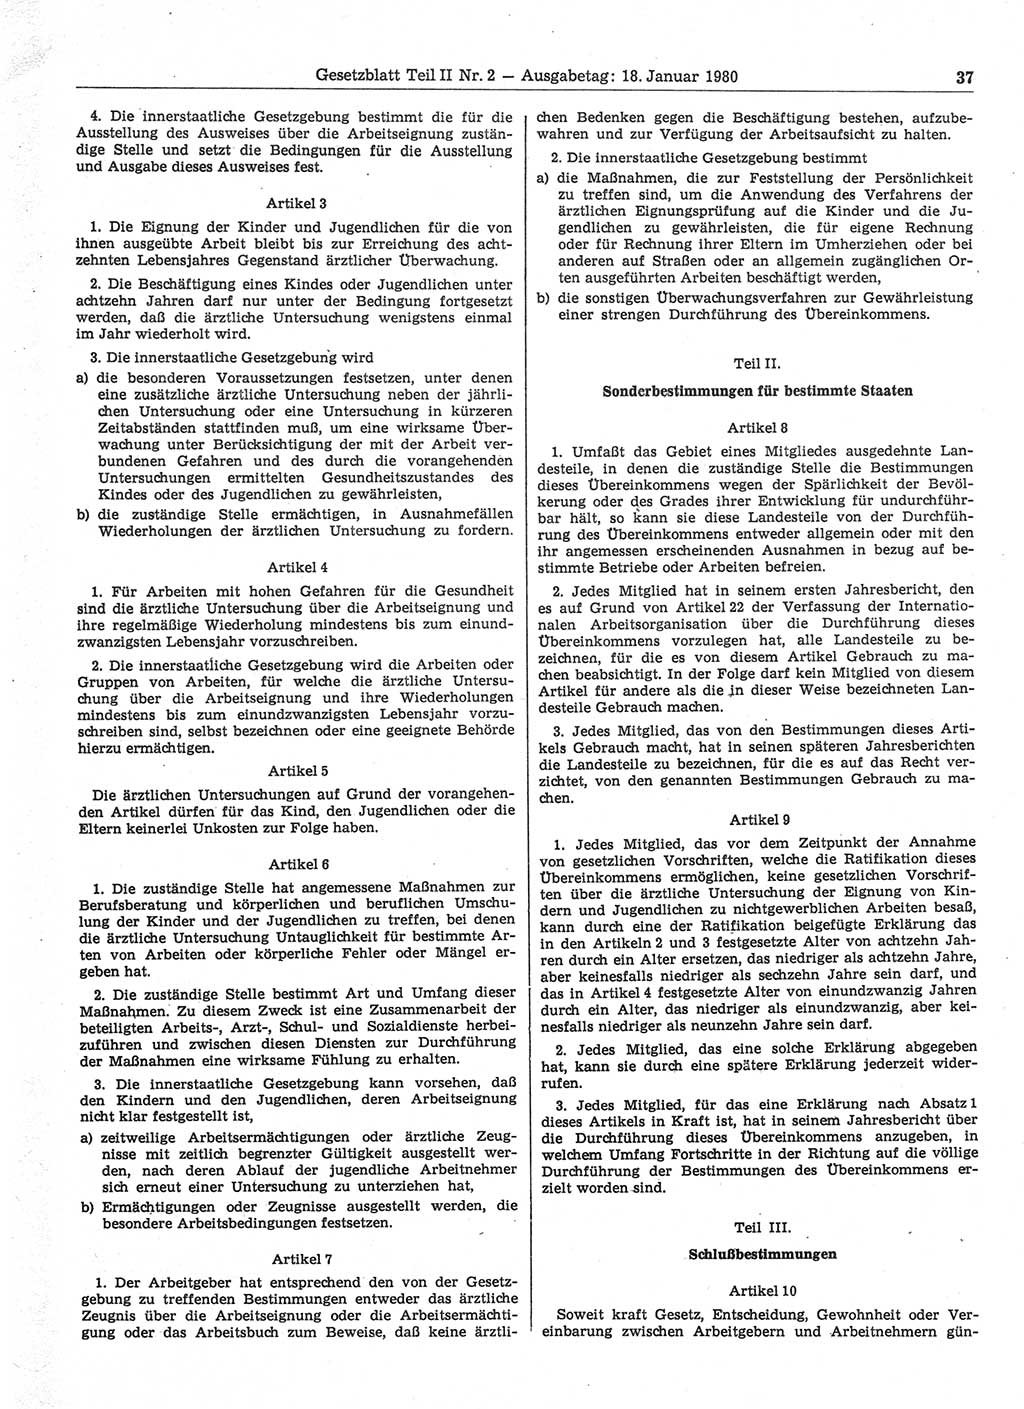 Gesetzblatt (GBl.) der Deutschen Demokratischen Republik (DDR) Teil ⅠⅠ 1980, Seite 37 (GBl. DDR ⅠⅠ 1980, S. 37)